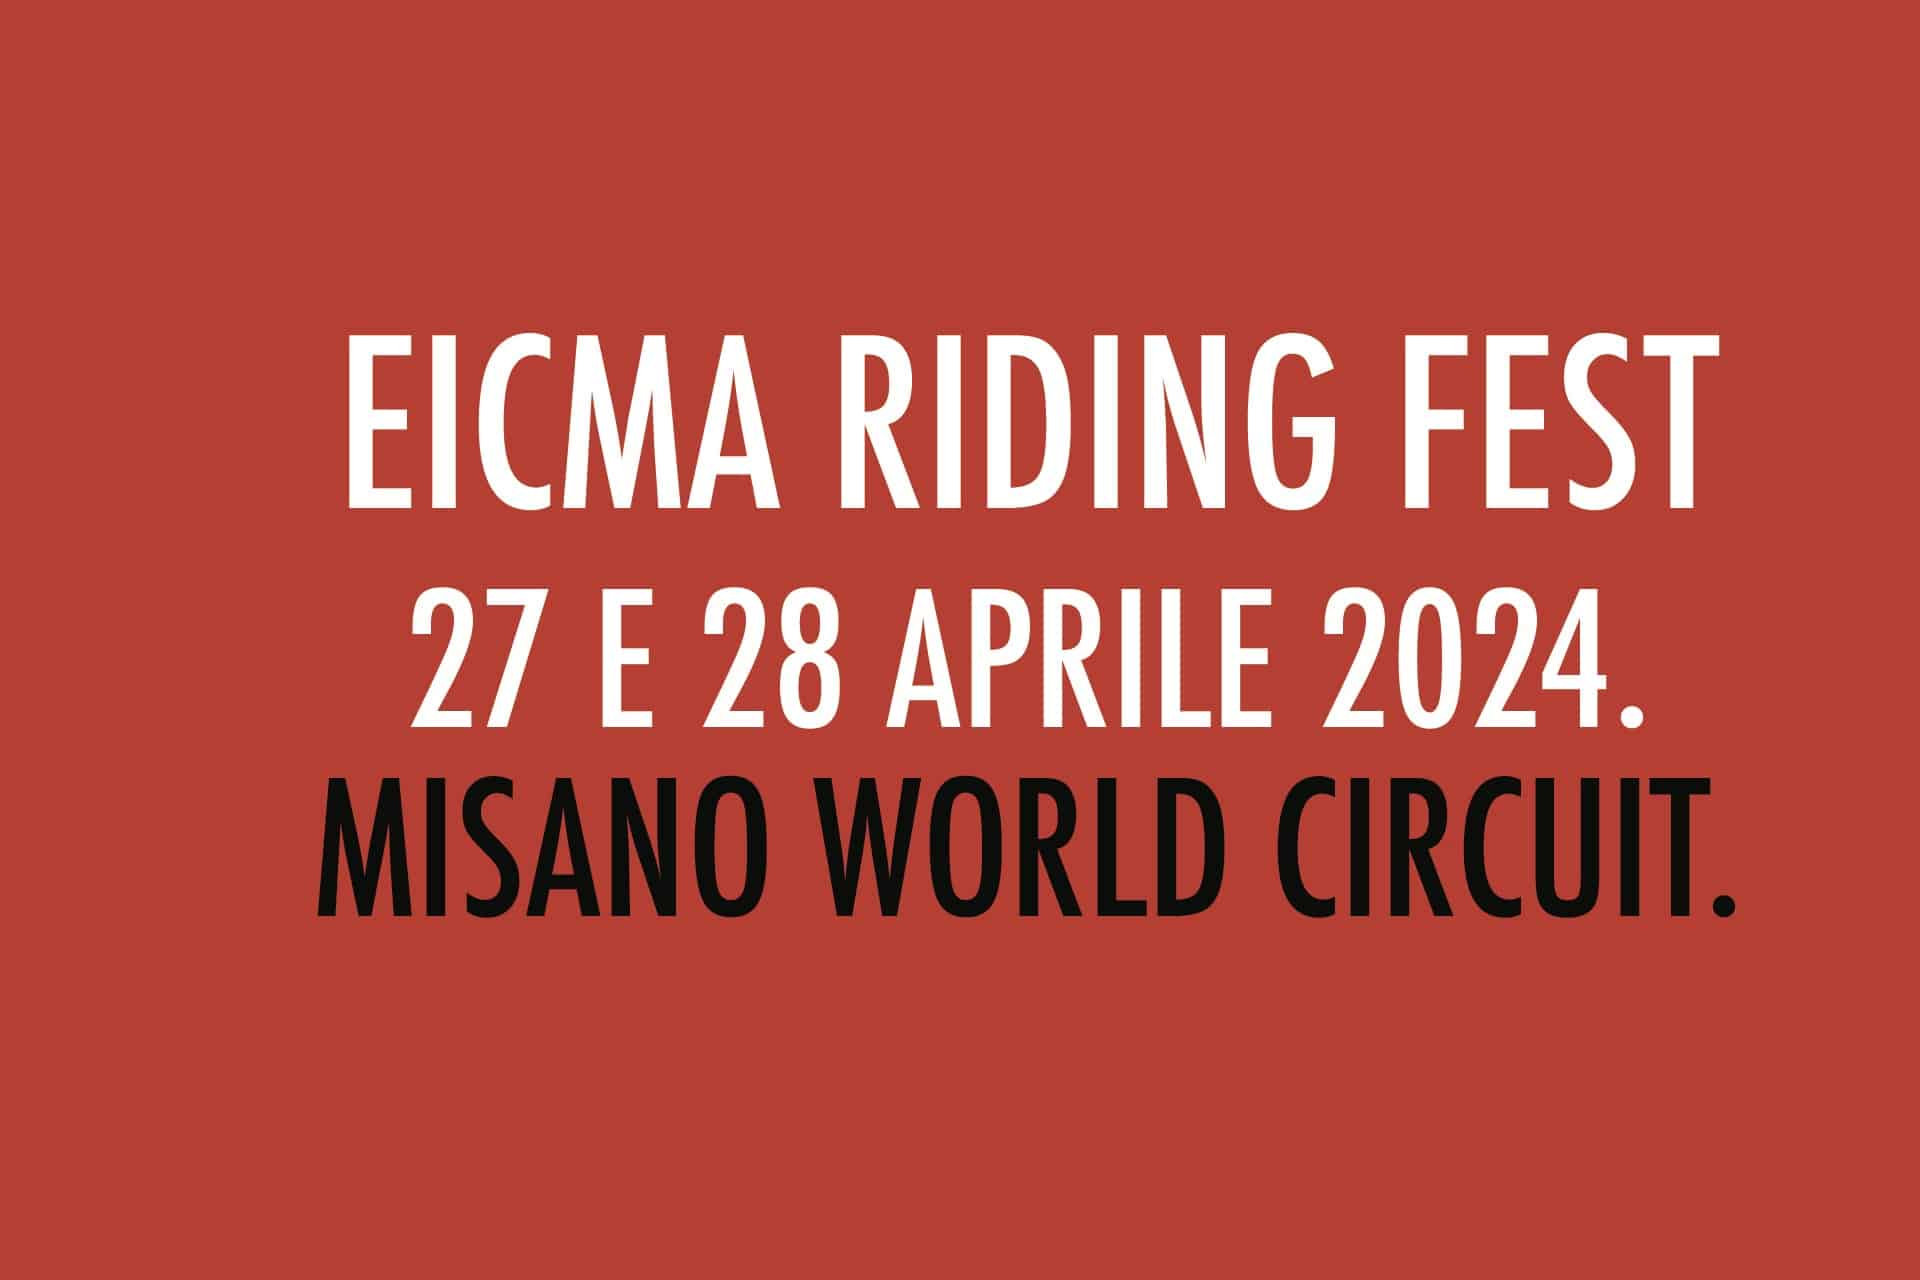 EICMA Riding Fest: El evento dedicado a disfrutar de la motocicleta